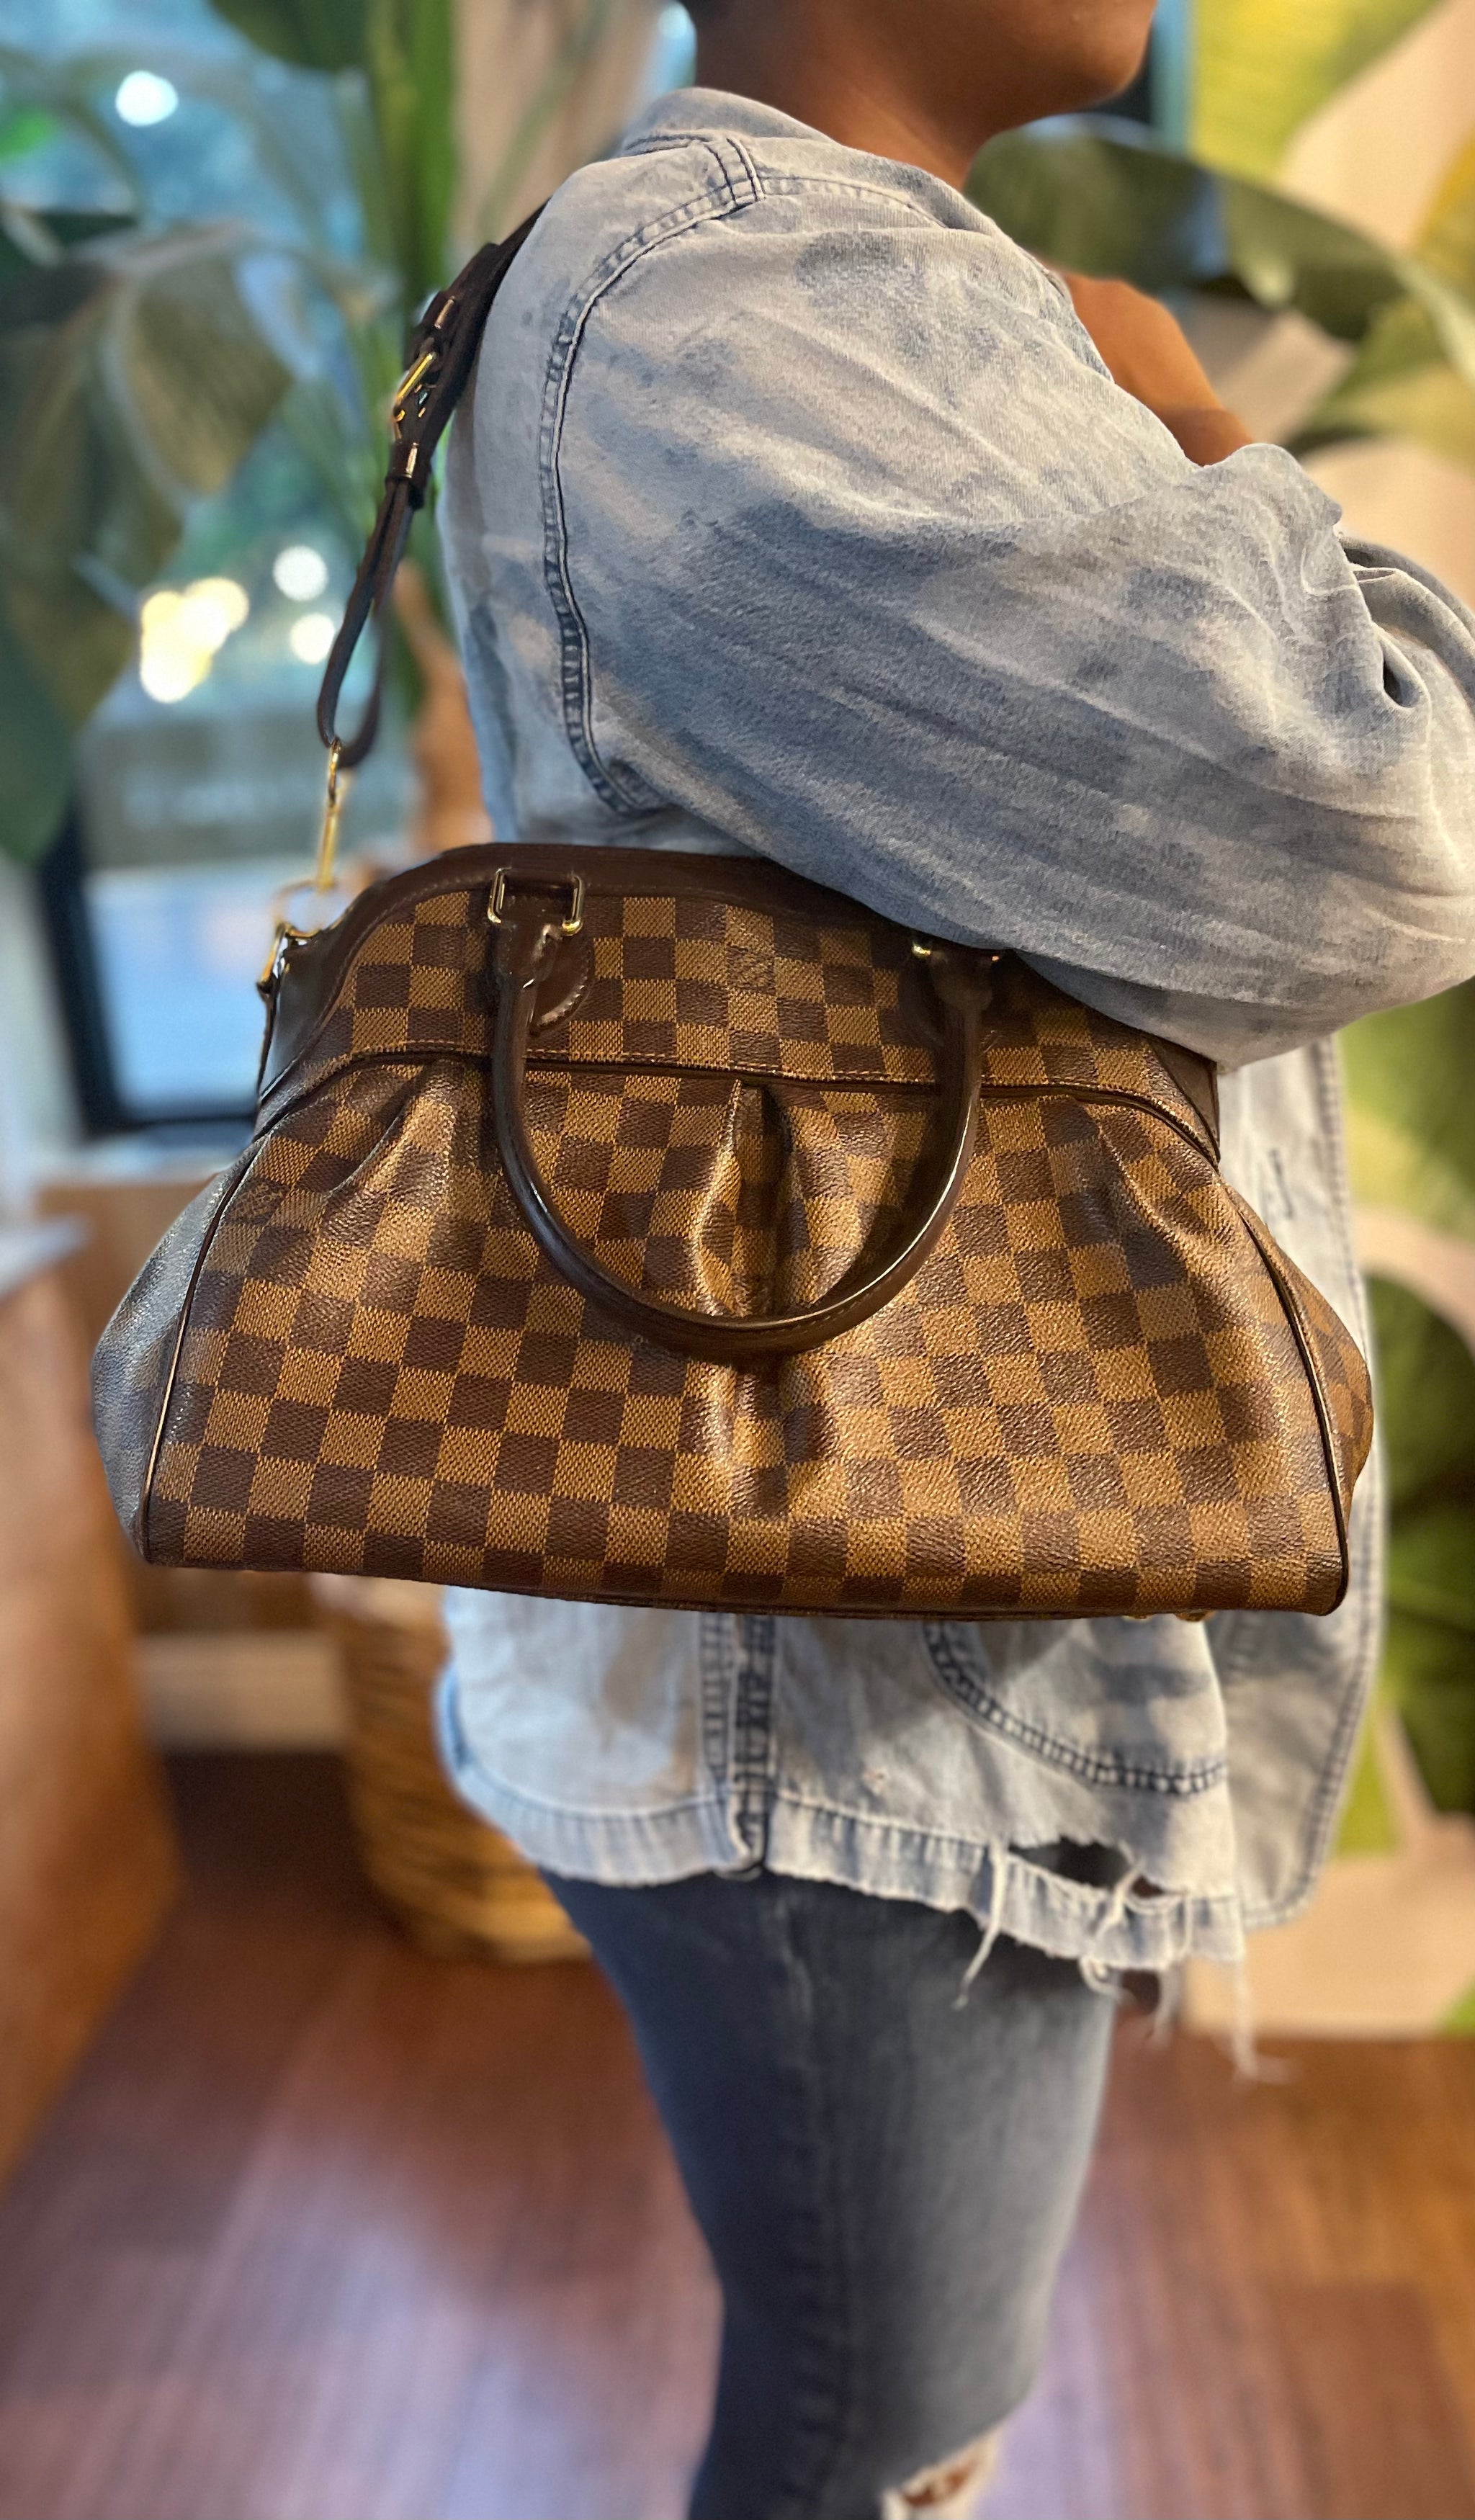 Louis Vuitton Trevi PM Damier Ebene Shoulder Bag in Mint Condition